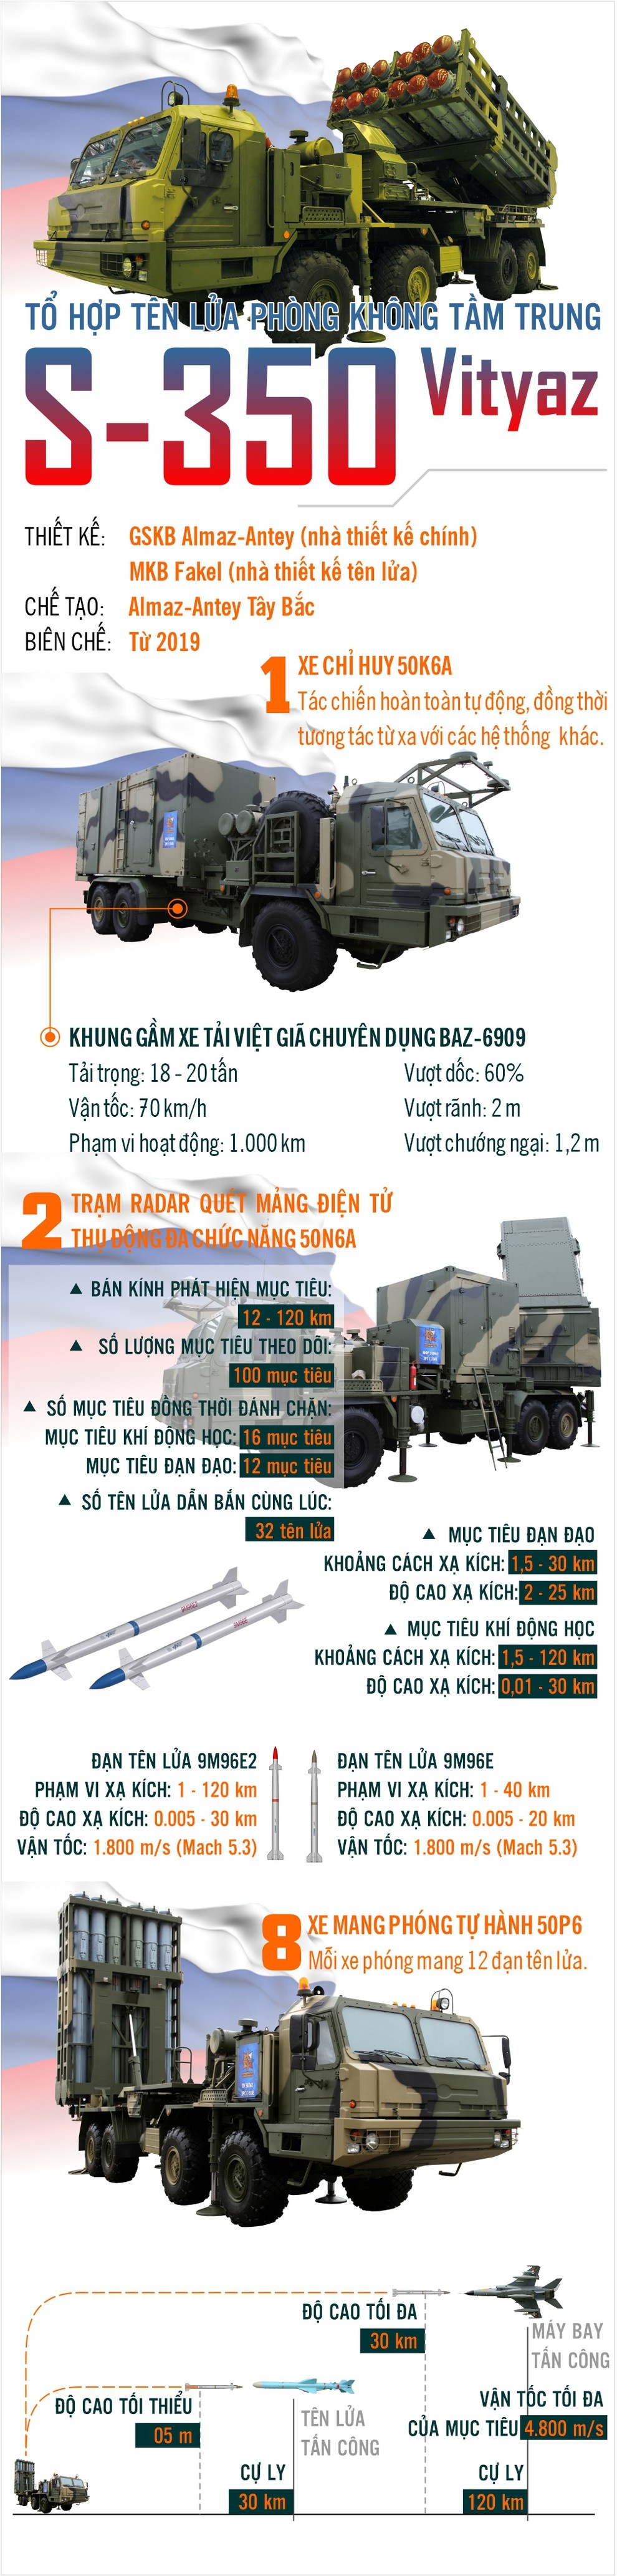 Infographic: Tổ hợp tên lửa phòng không tầm trung S350 Vityaz thế hệ mới của Nga có gì mới?